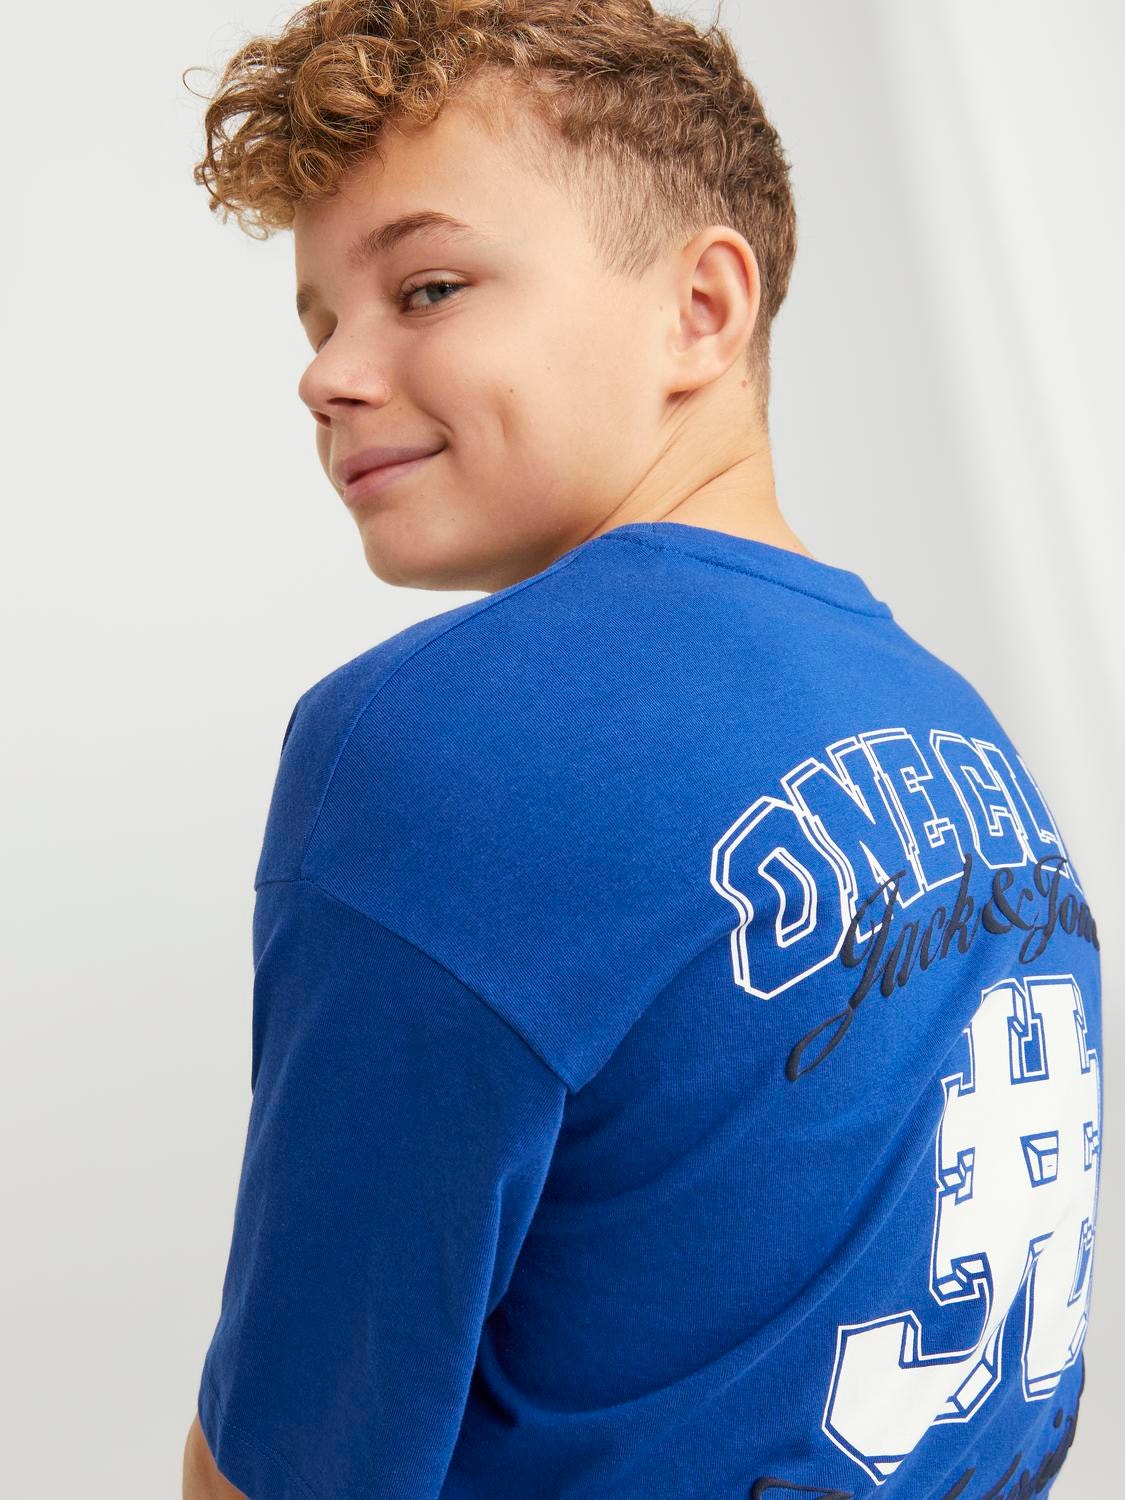 Jack & Jones T-shirt Imprimé Pour les garçons -Mazarine Blue - 12254238